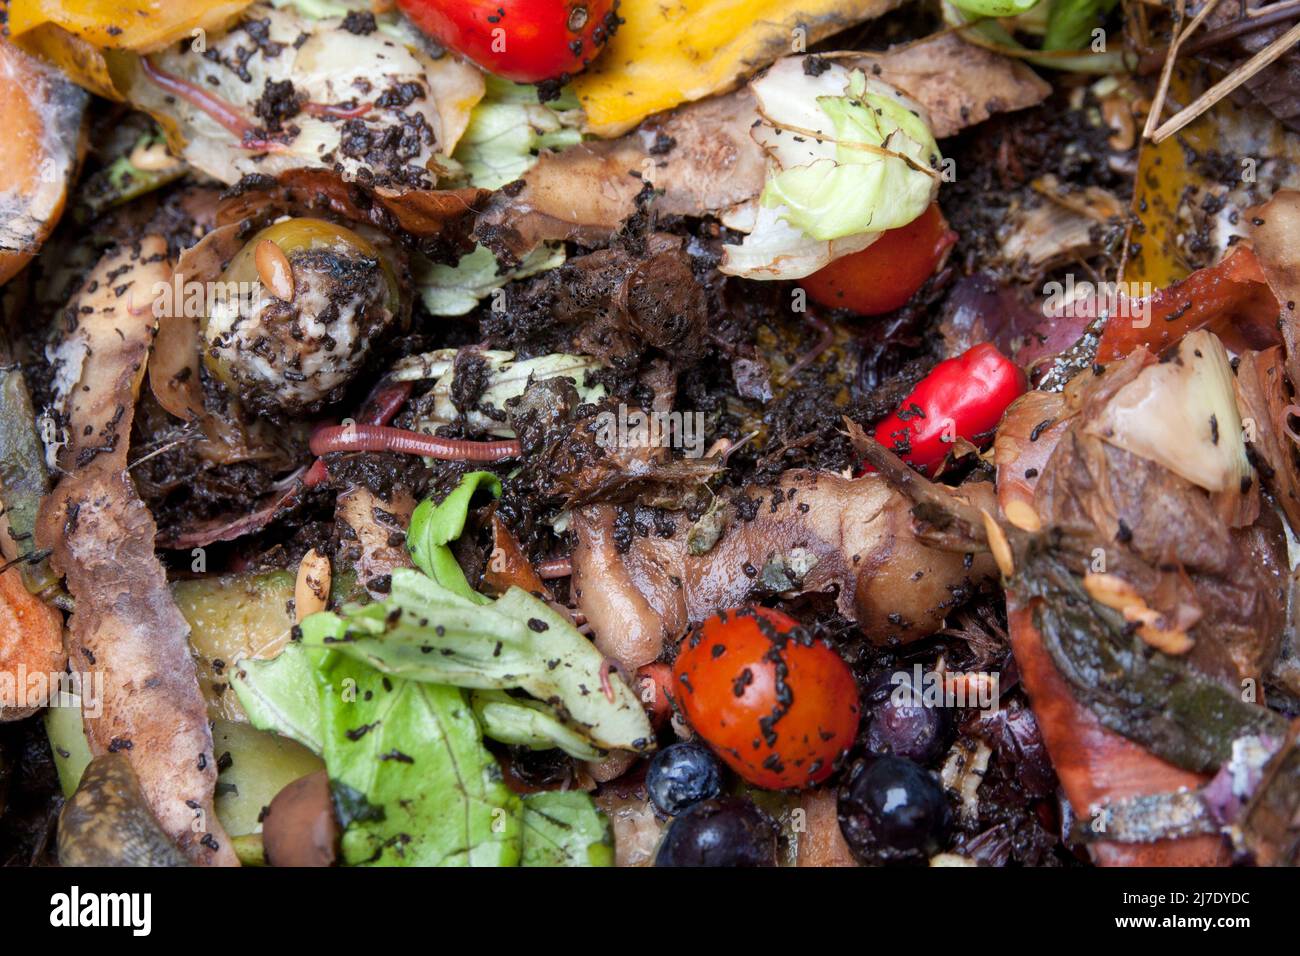 Descomposición de alimentos compuestos en la meria, Reino Unido Foto de stock